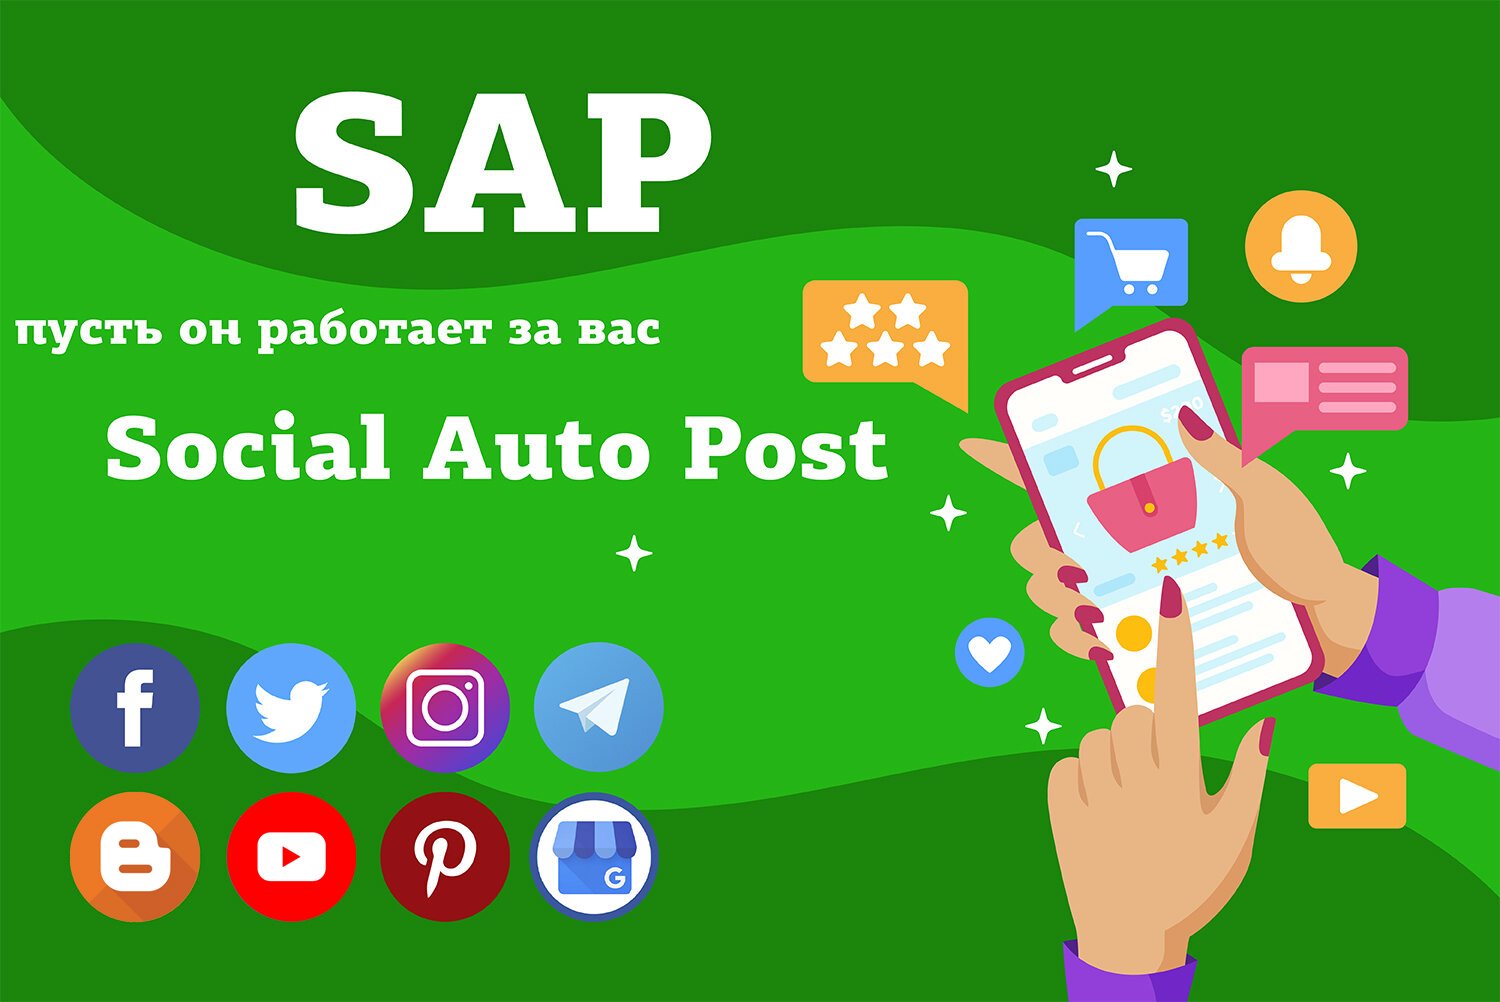 SAP - Social Auto Post (Публикация товаров в социальные сети)